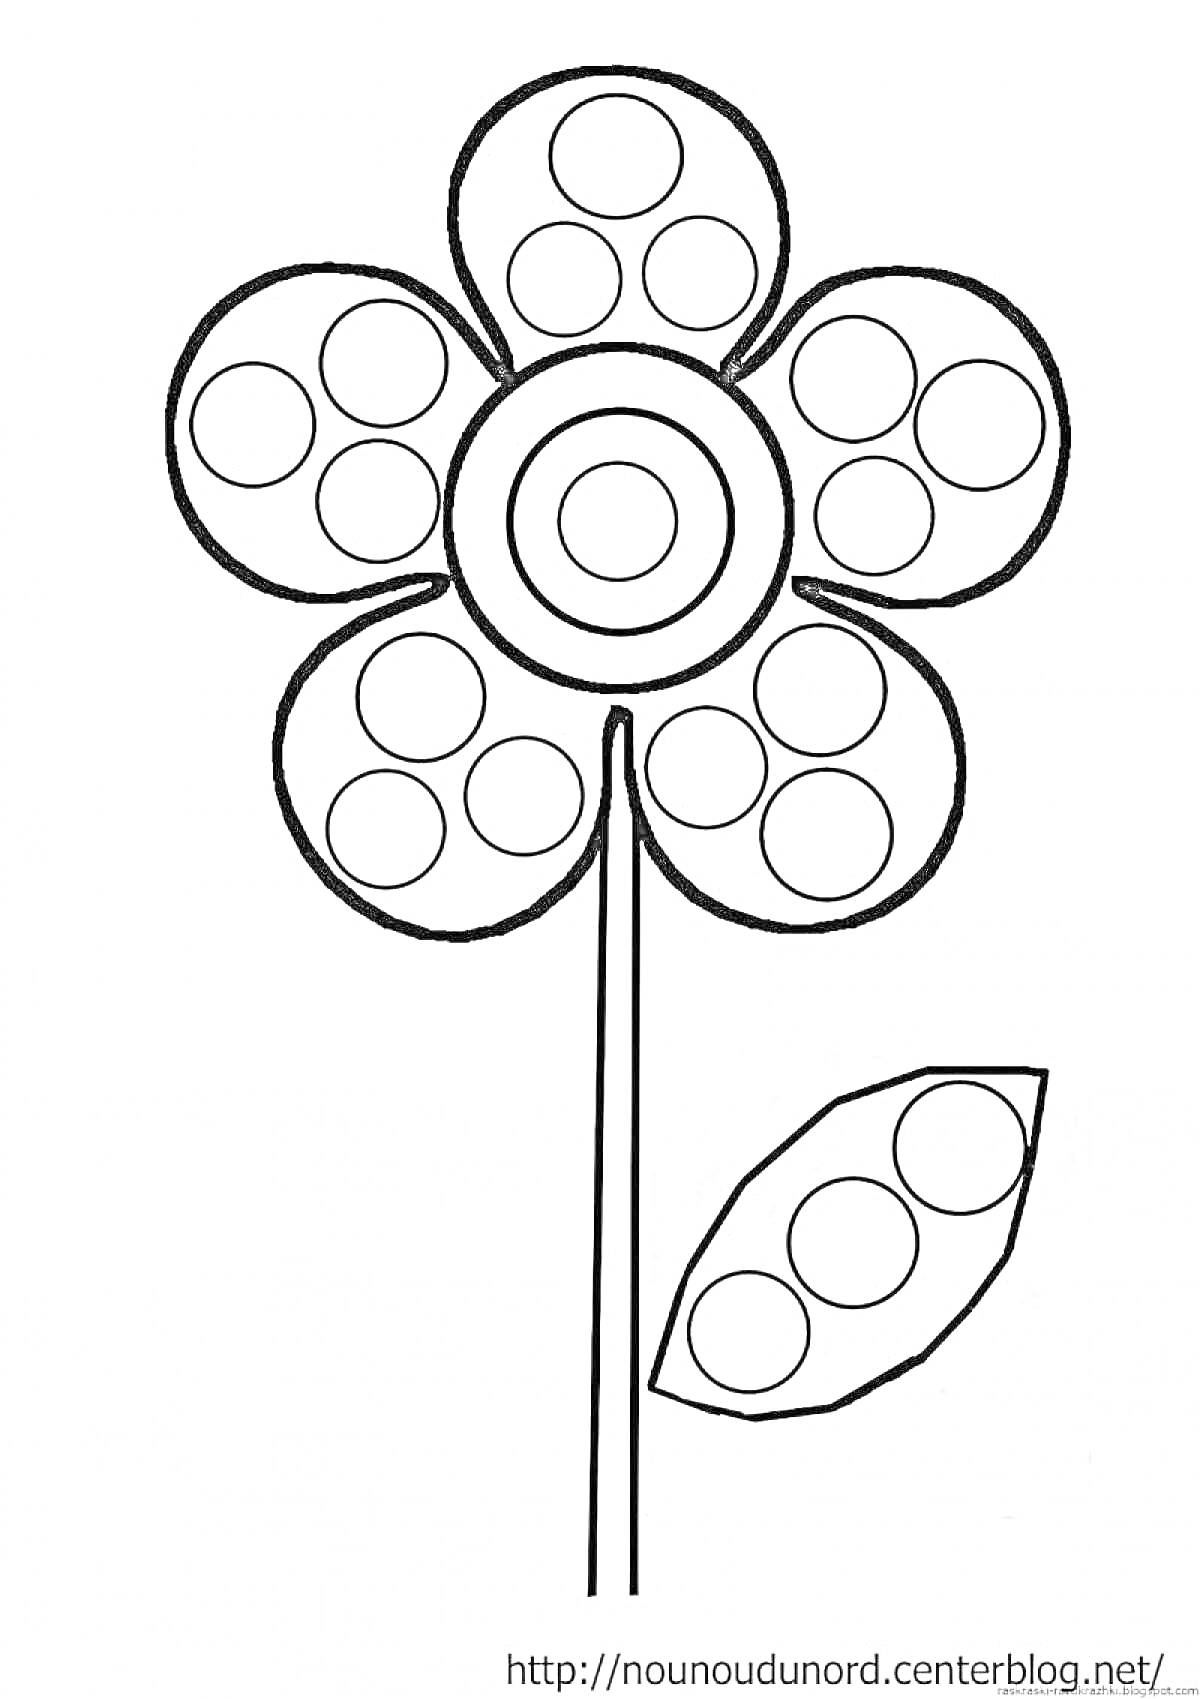 Раскраска Цветок с кругами на лепестках и листе